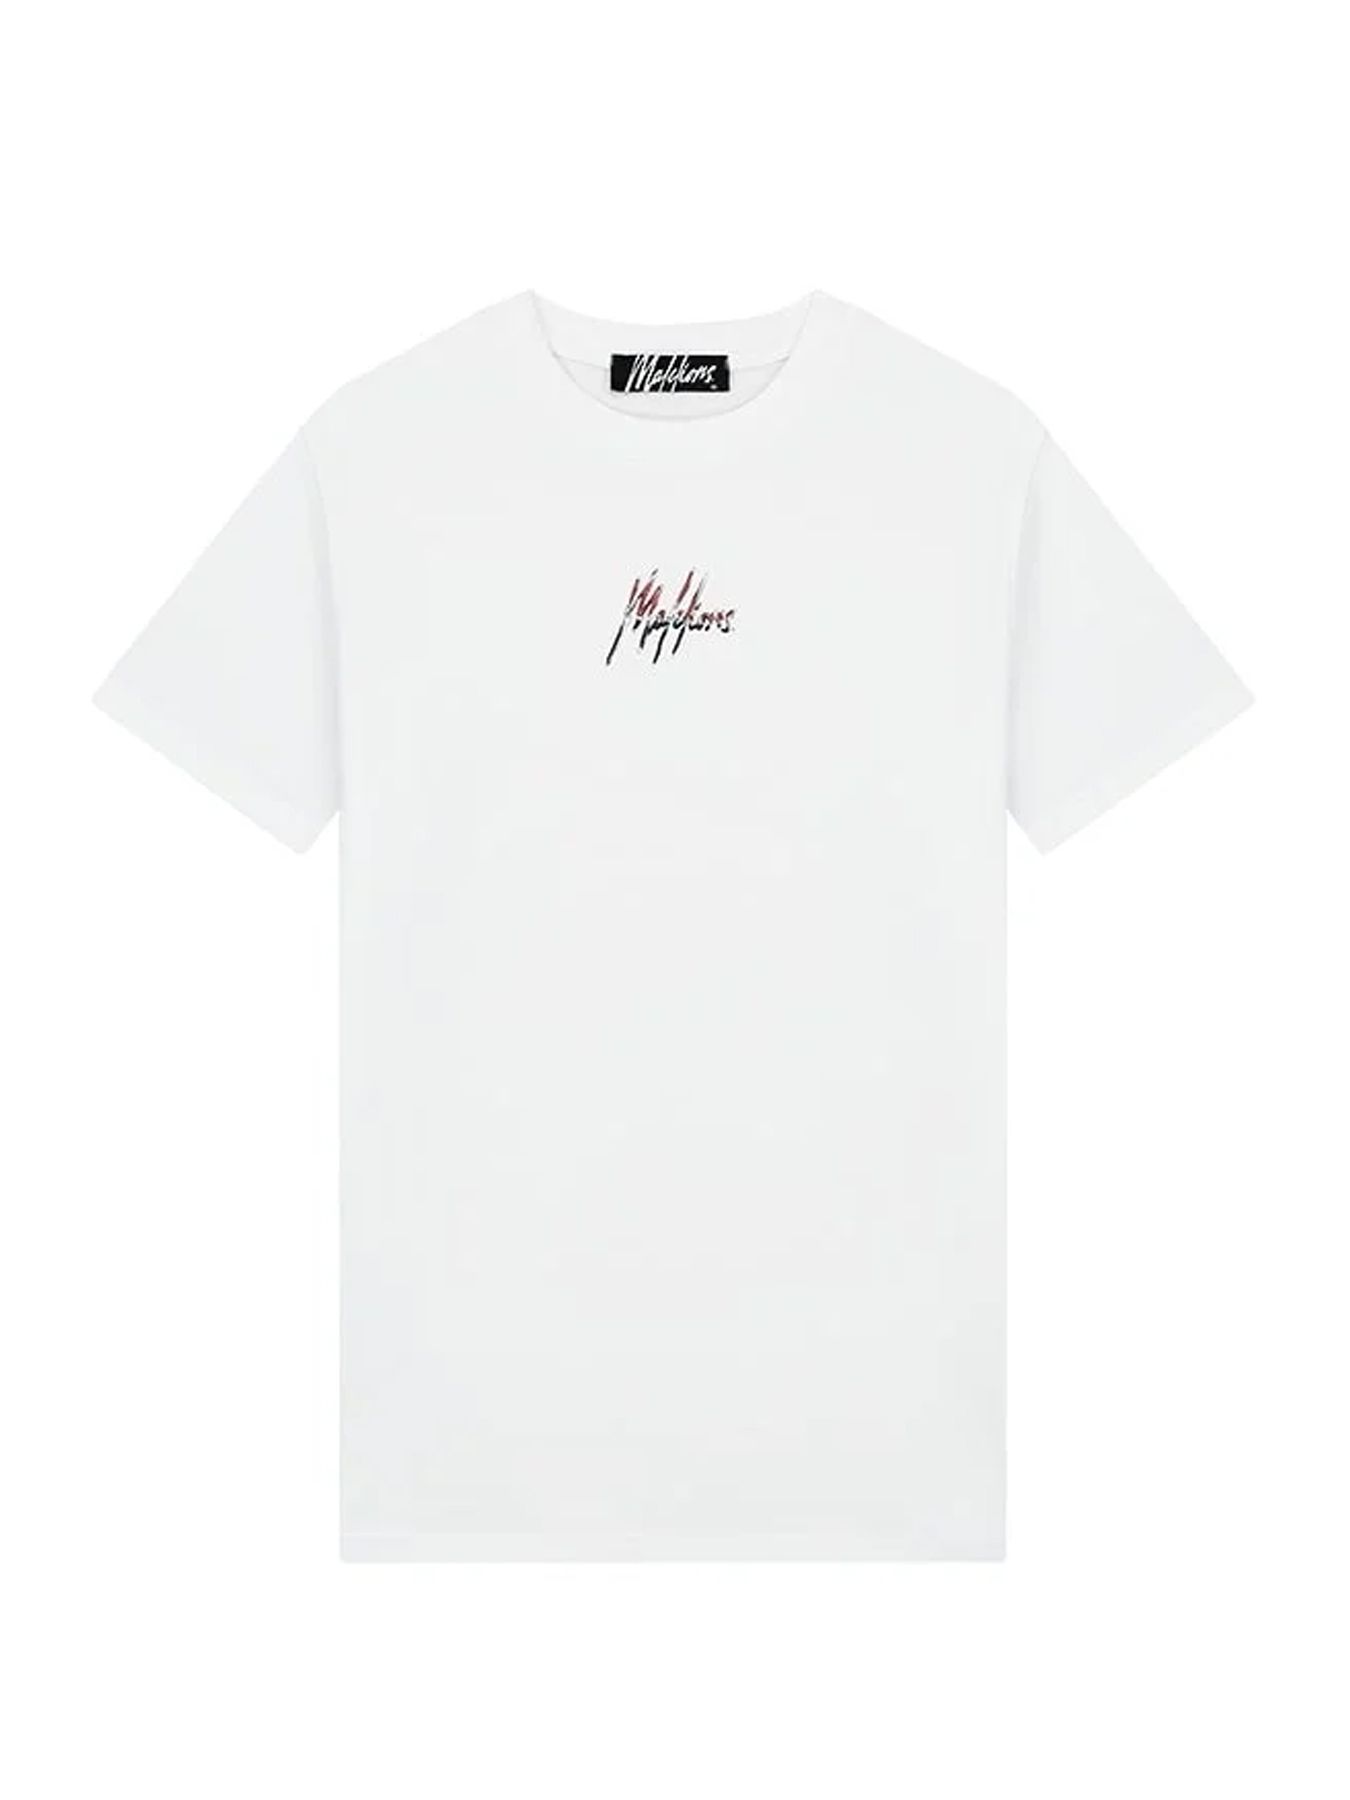 Malelions Men split 2.0 t-shirt White/Dark mauve 00109025-218